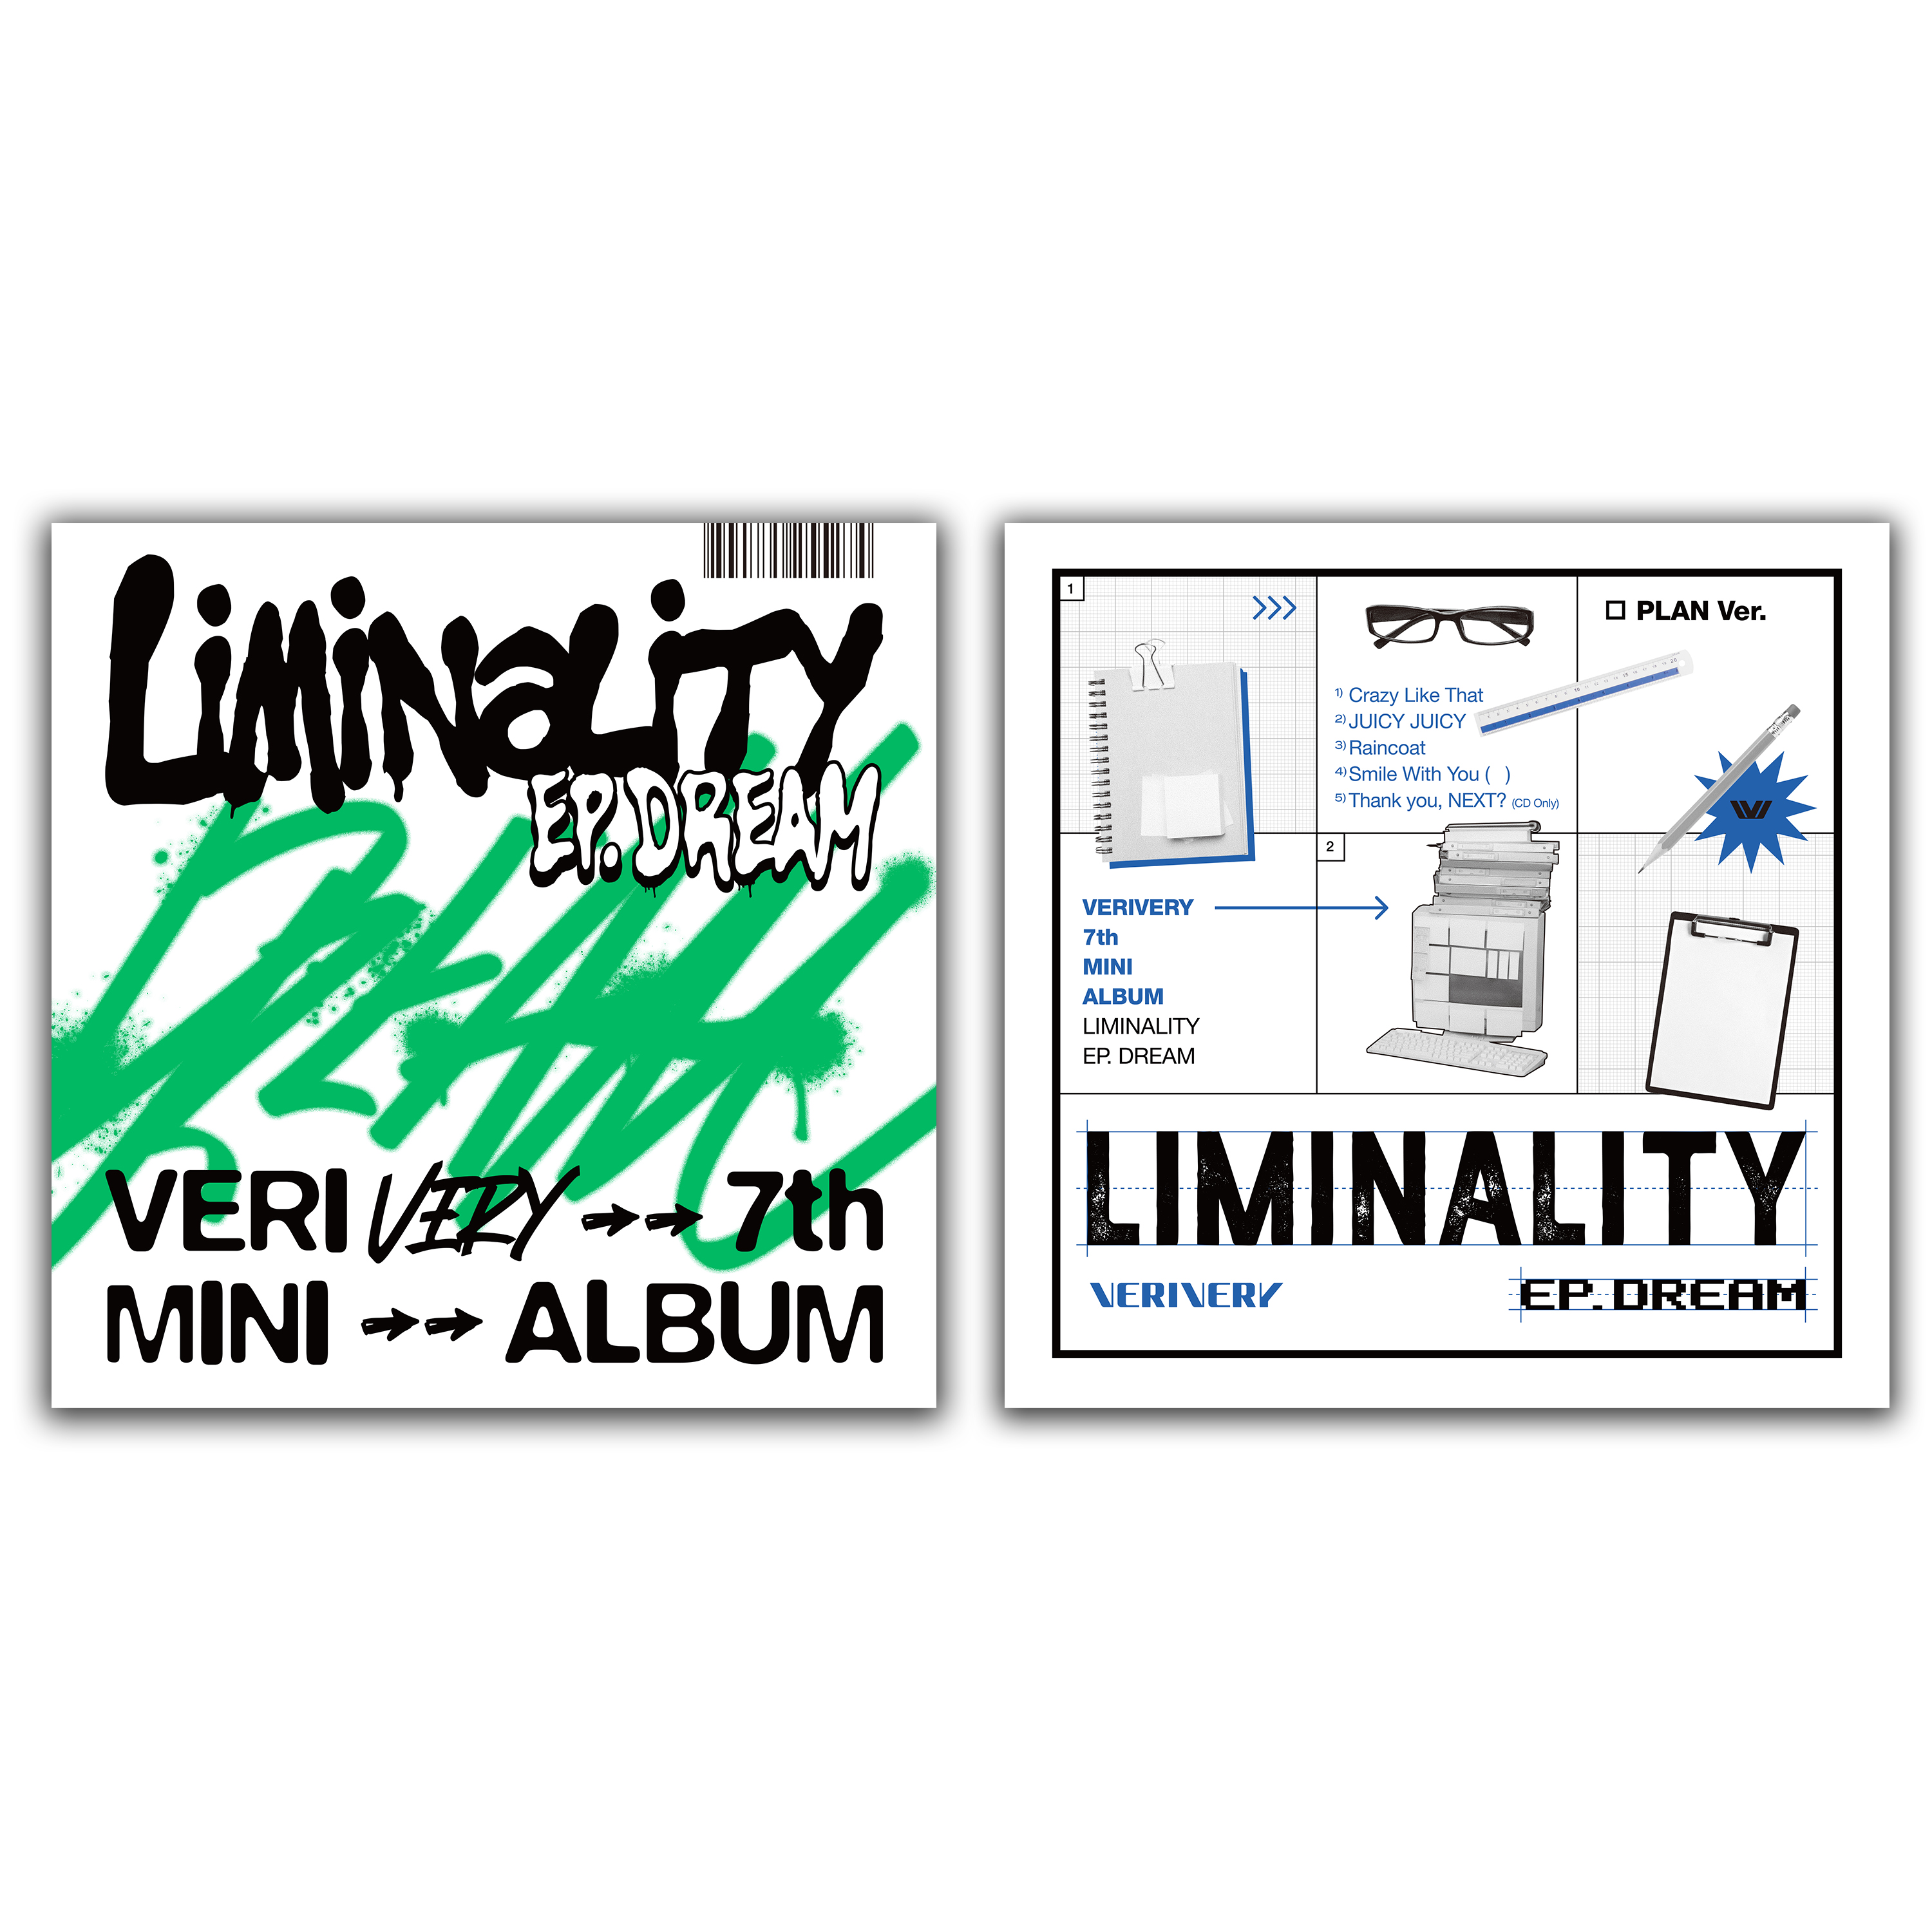 [全款 裸专] [2CD 套装] VERIVERY  - 迷你7辑 [Liminality - EP.DREAM] (PLAY ver. + PLAN ver.) _verivery乐园